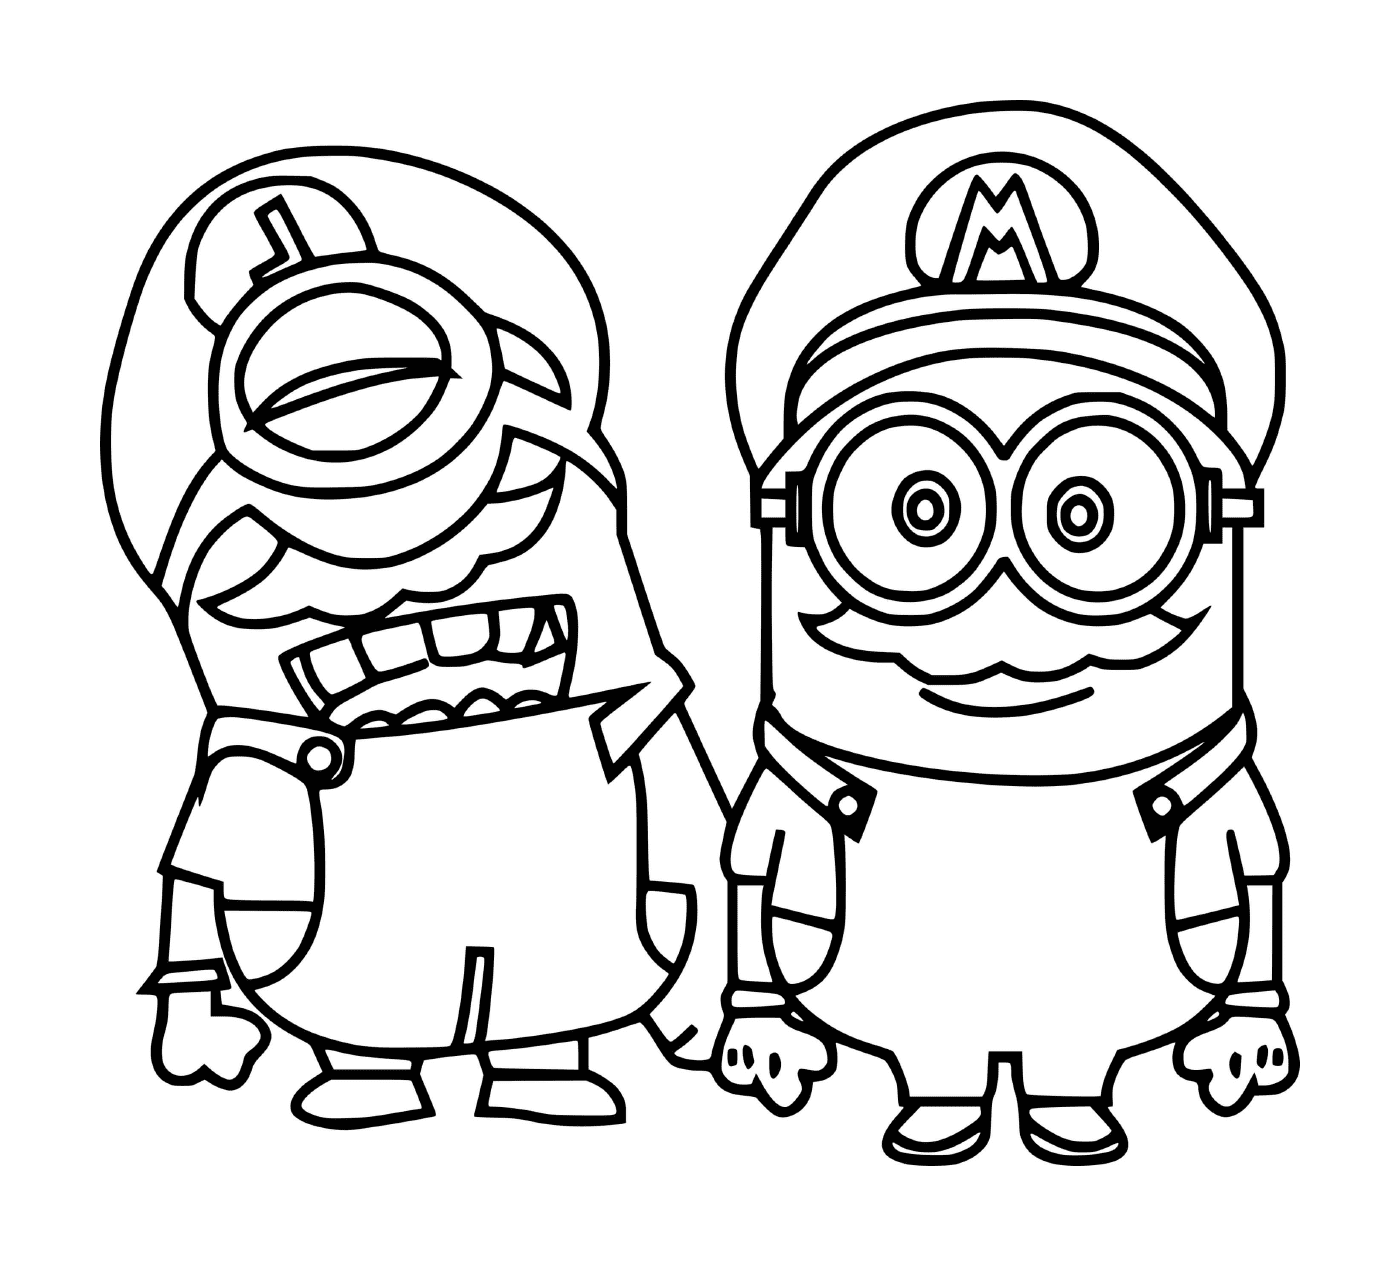  Mario Minions insieme 